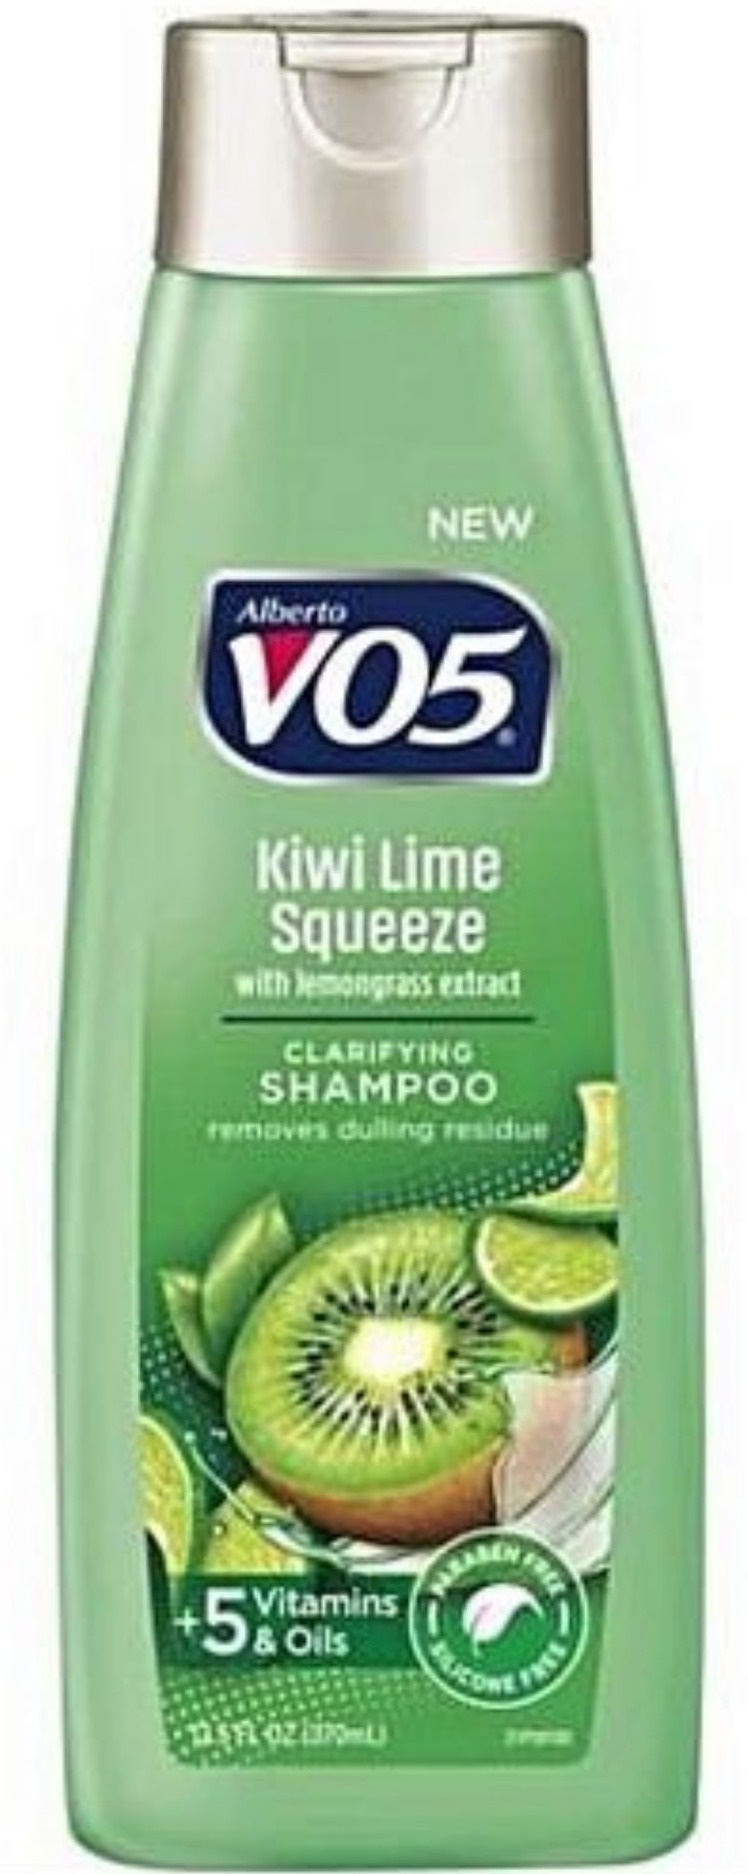 V05 Kiwi Lime Squeeze Clarifying Shampoo